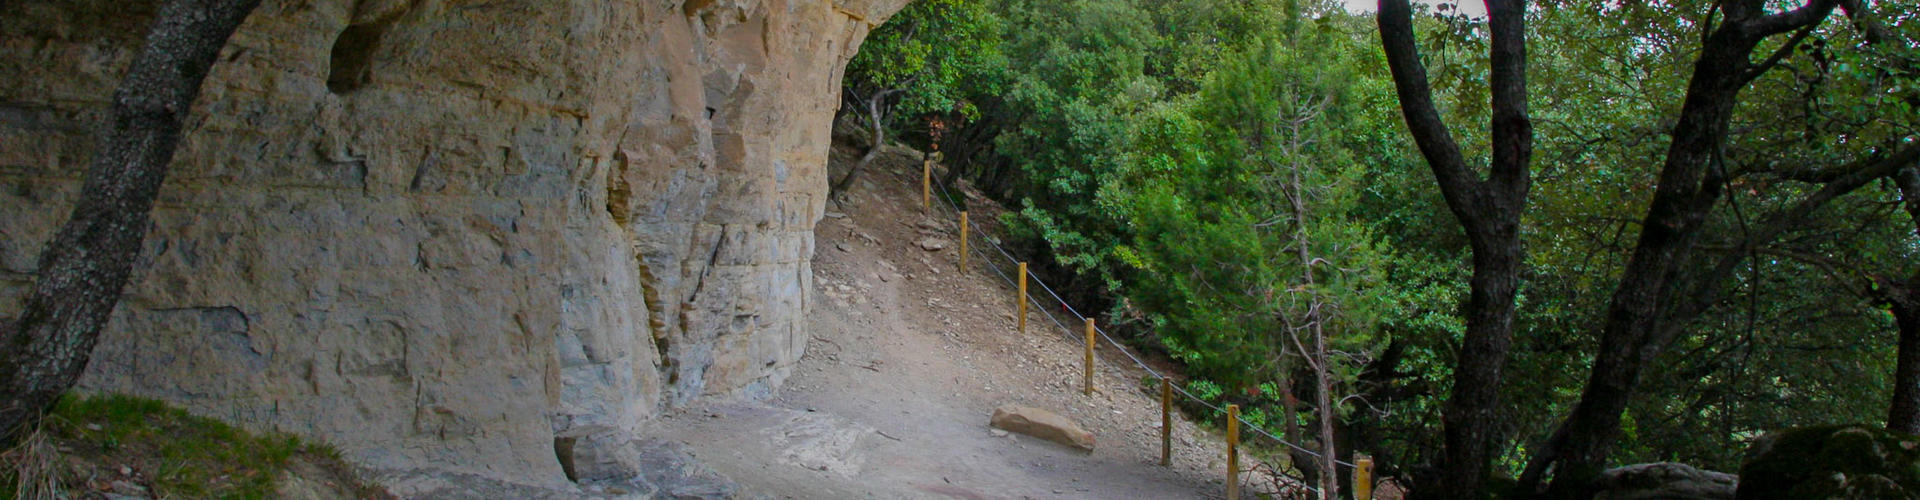 Ruta al Puig del Far. Vilanova de Sau